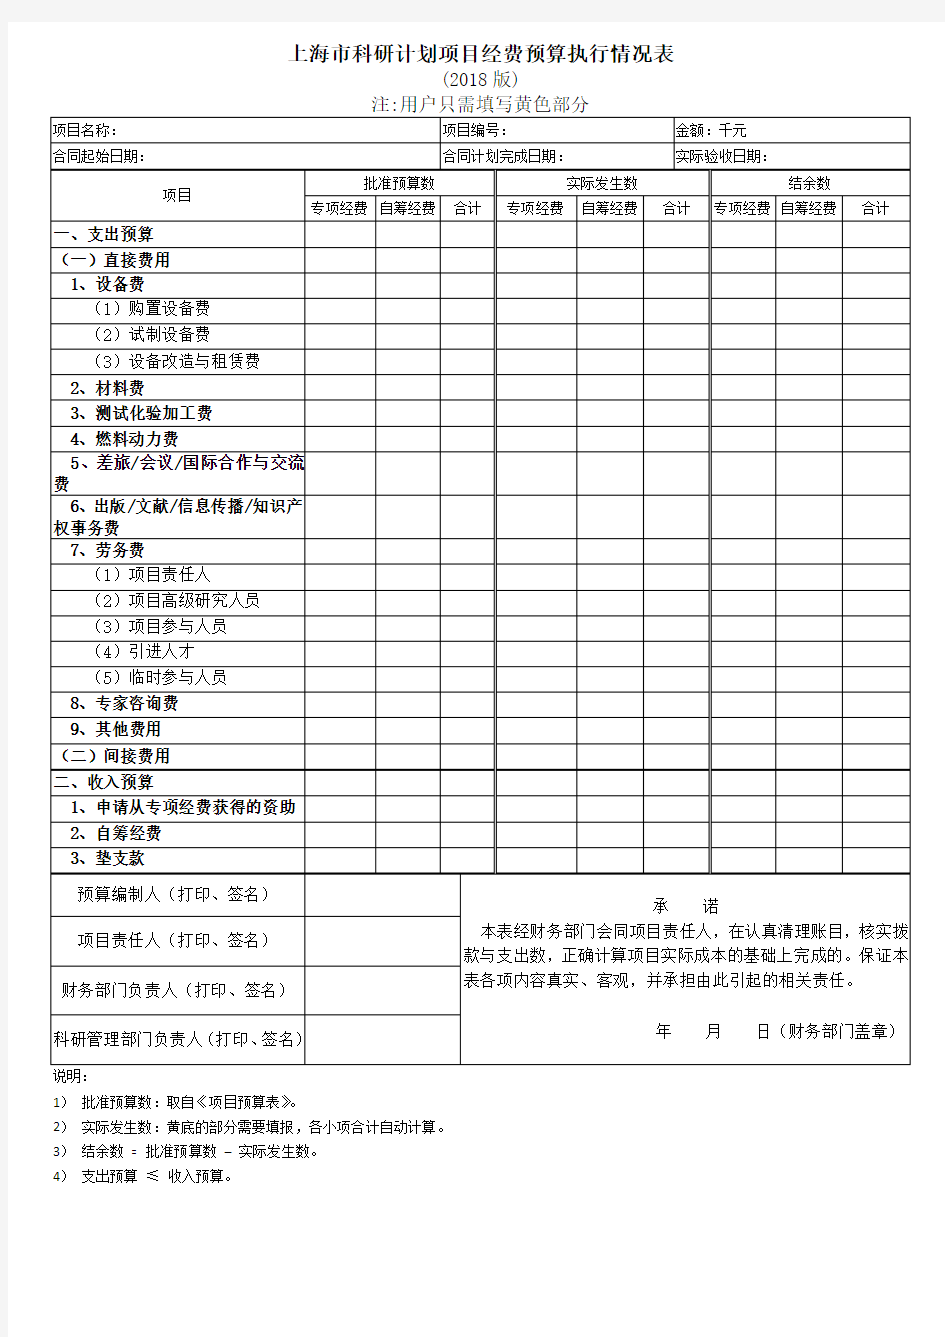 (完整版)上海市科研计划项目经费预算执行情况表